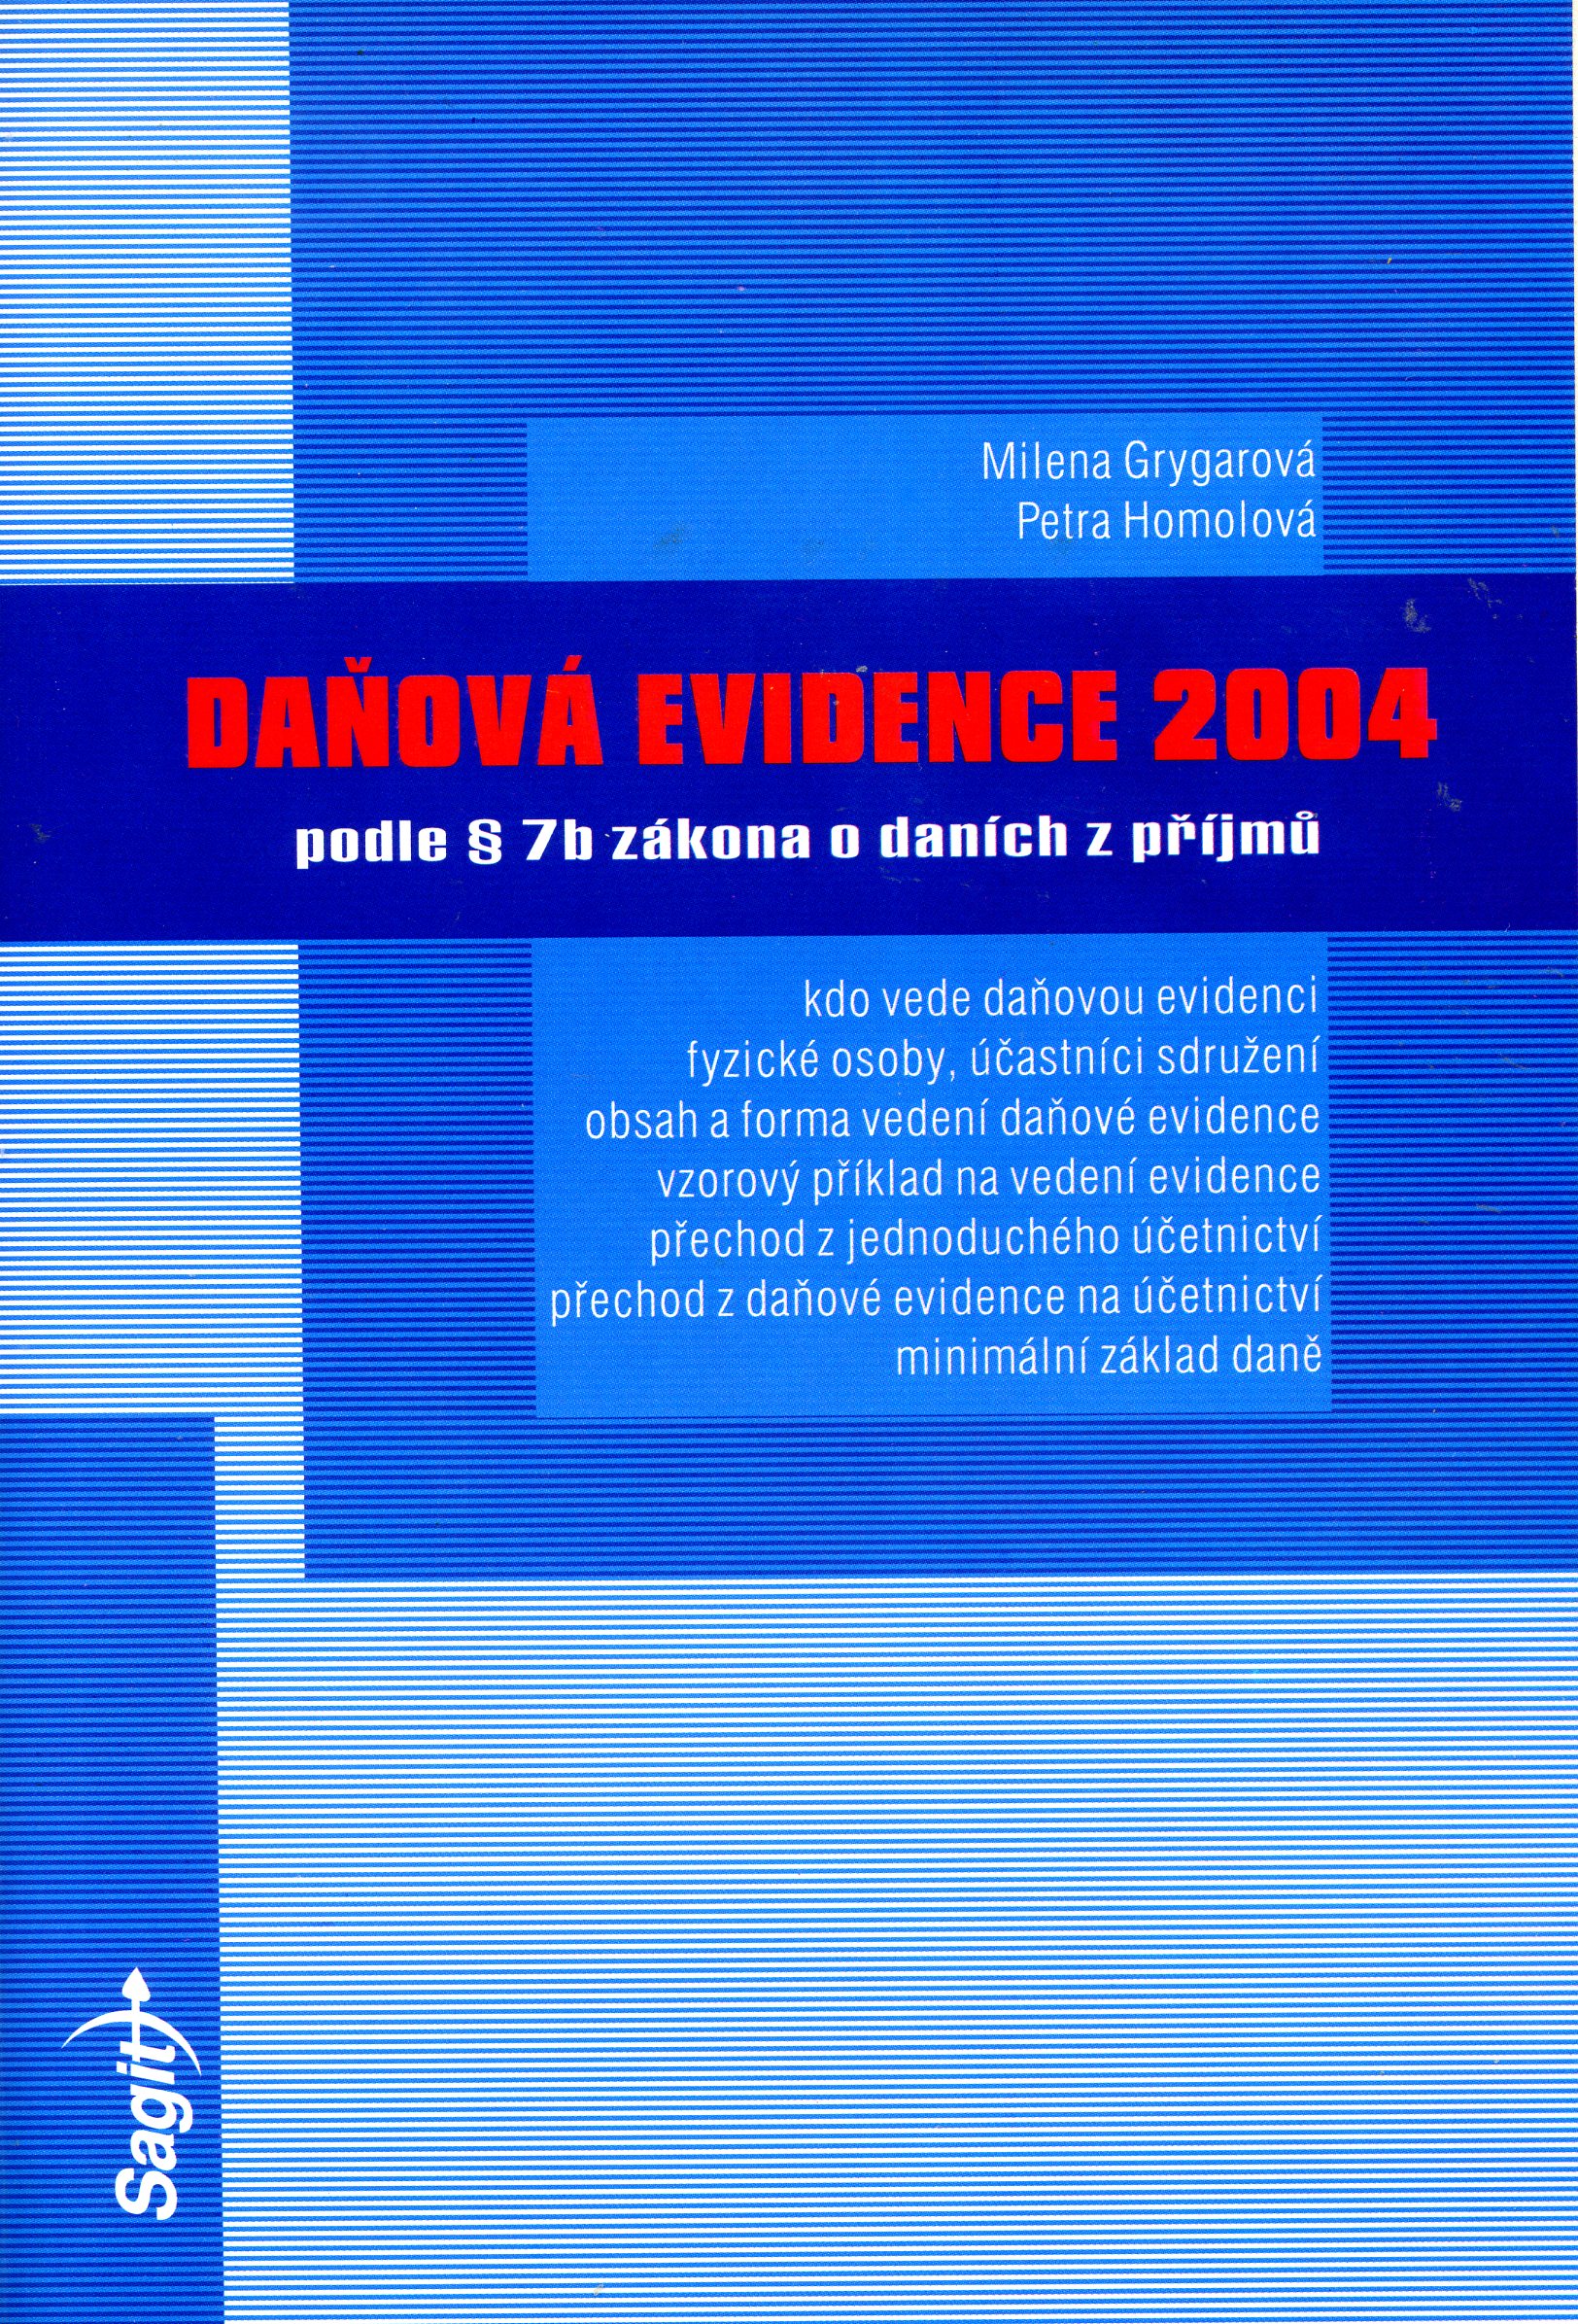 Daňová evidence 2004